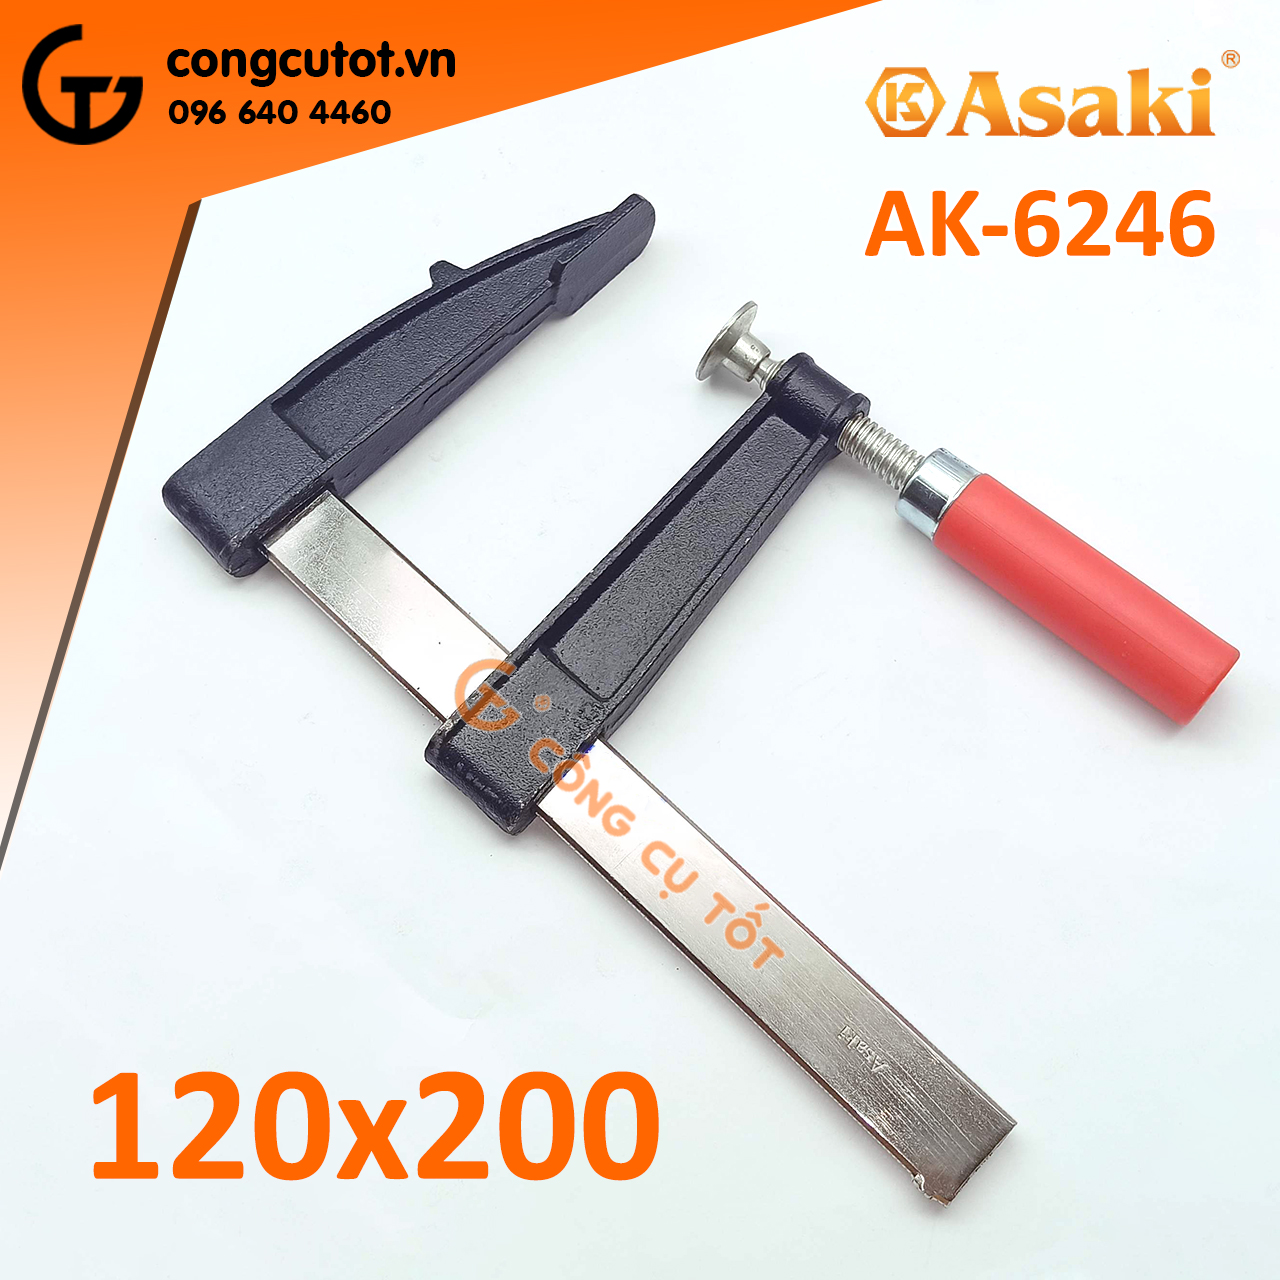 Cảo kẹp gỗ chữ F tay nhựa 120 x 200mm Asaki AK-6246